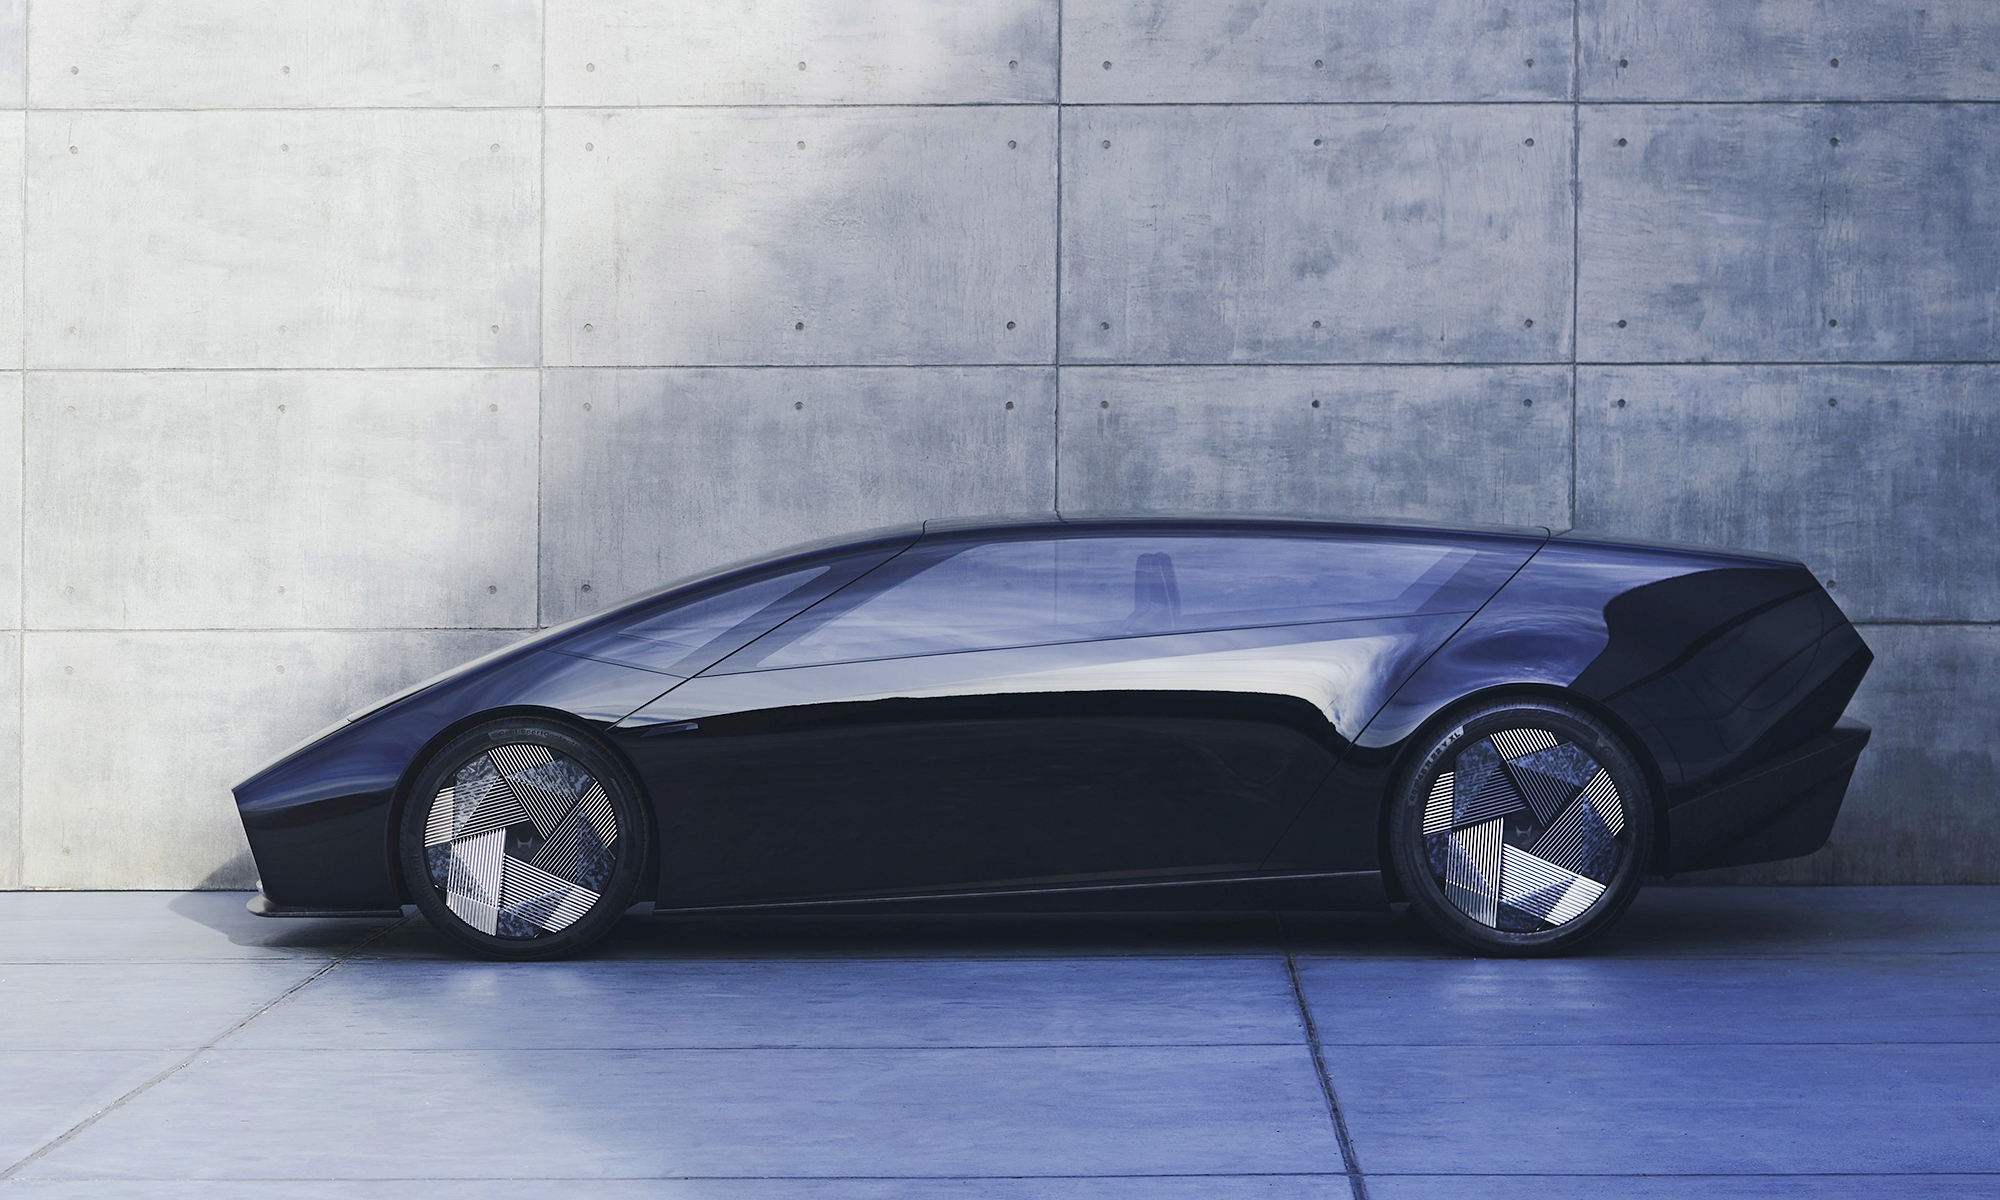 El concept presentado por Honda en el CES podría adelantar las líneas maestras de un futuro deportivo eléctrico.